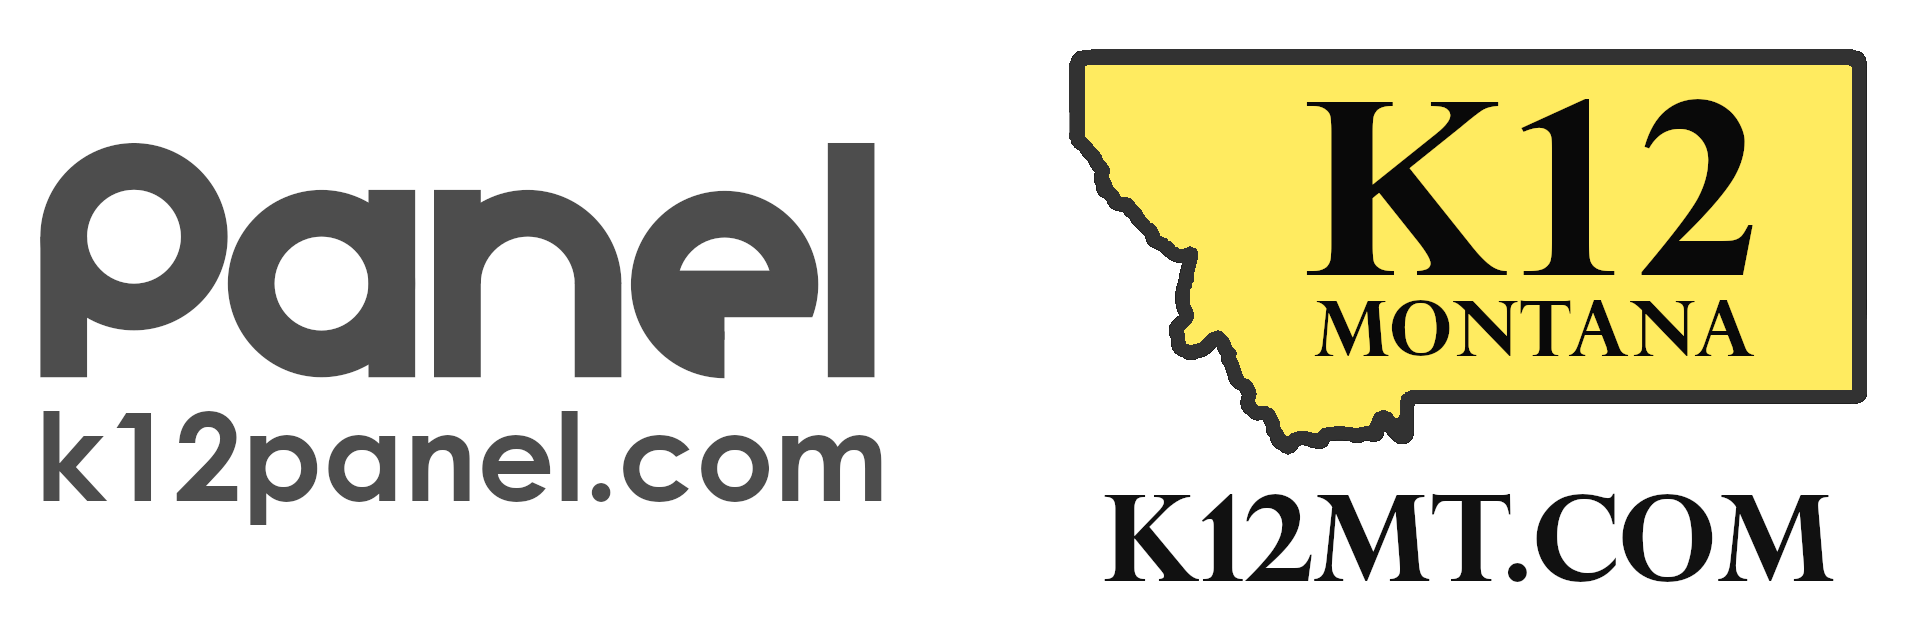 K12MT_k12panel_logo.png - 83.81 Kb